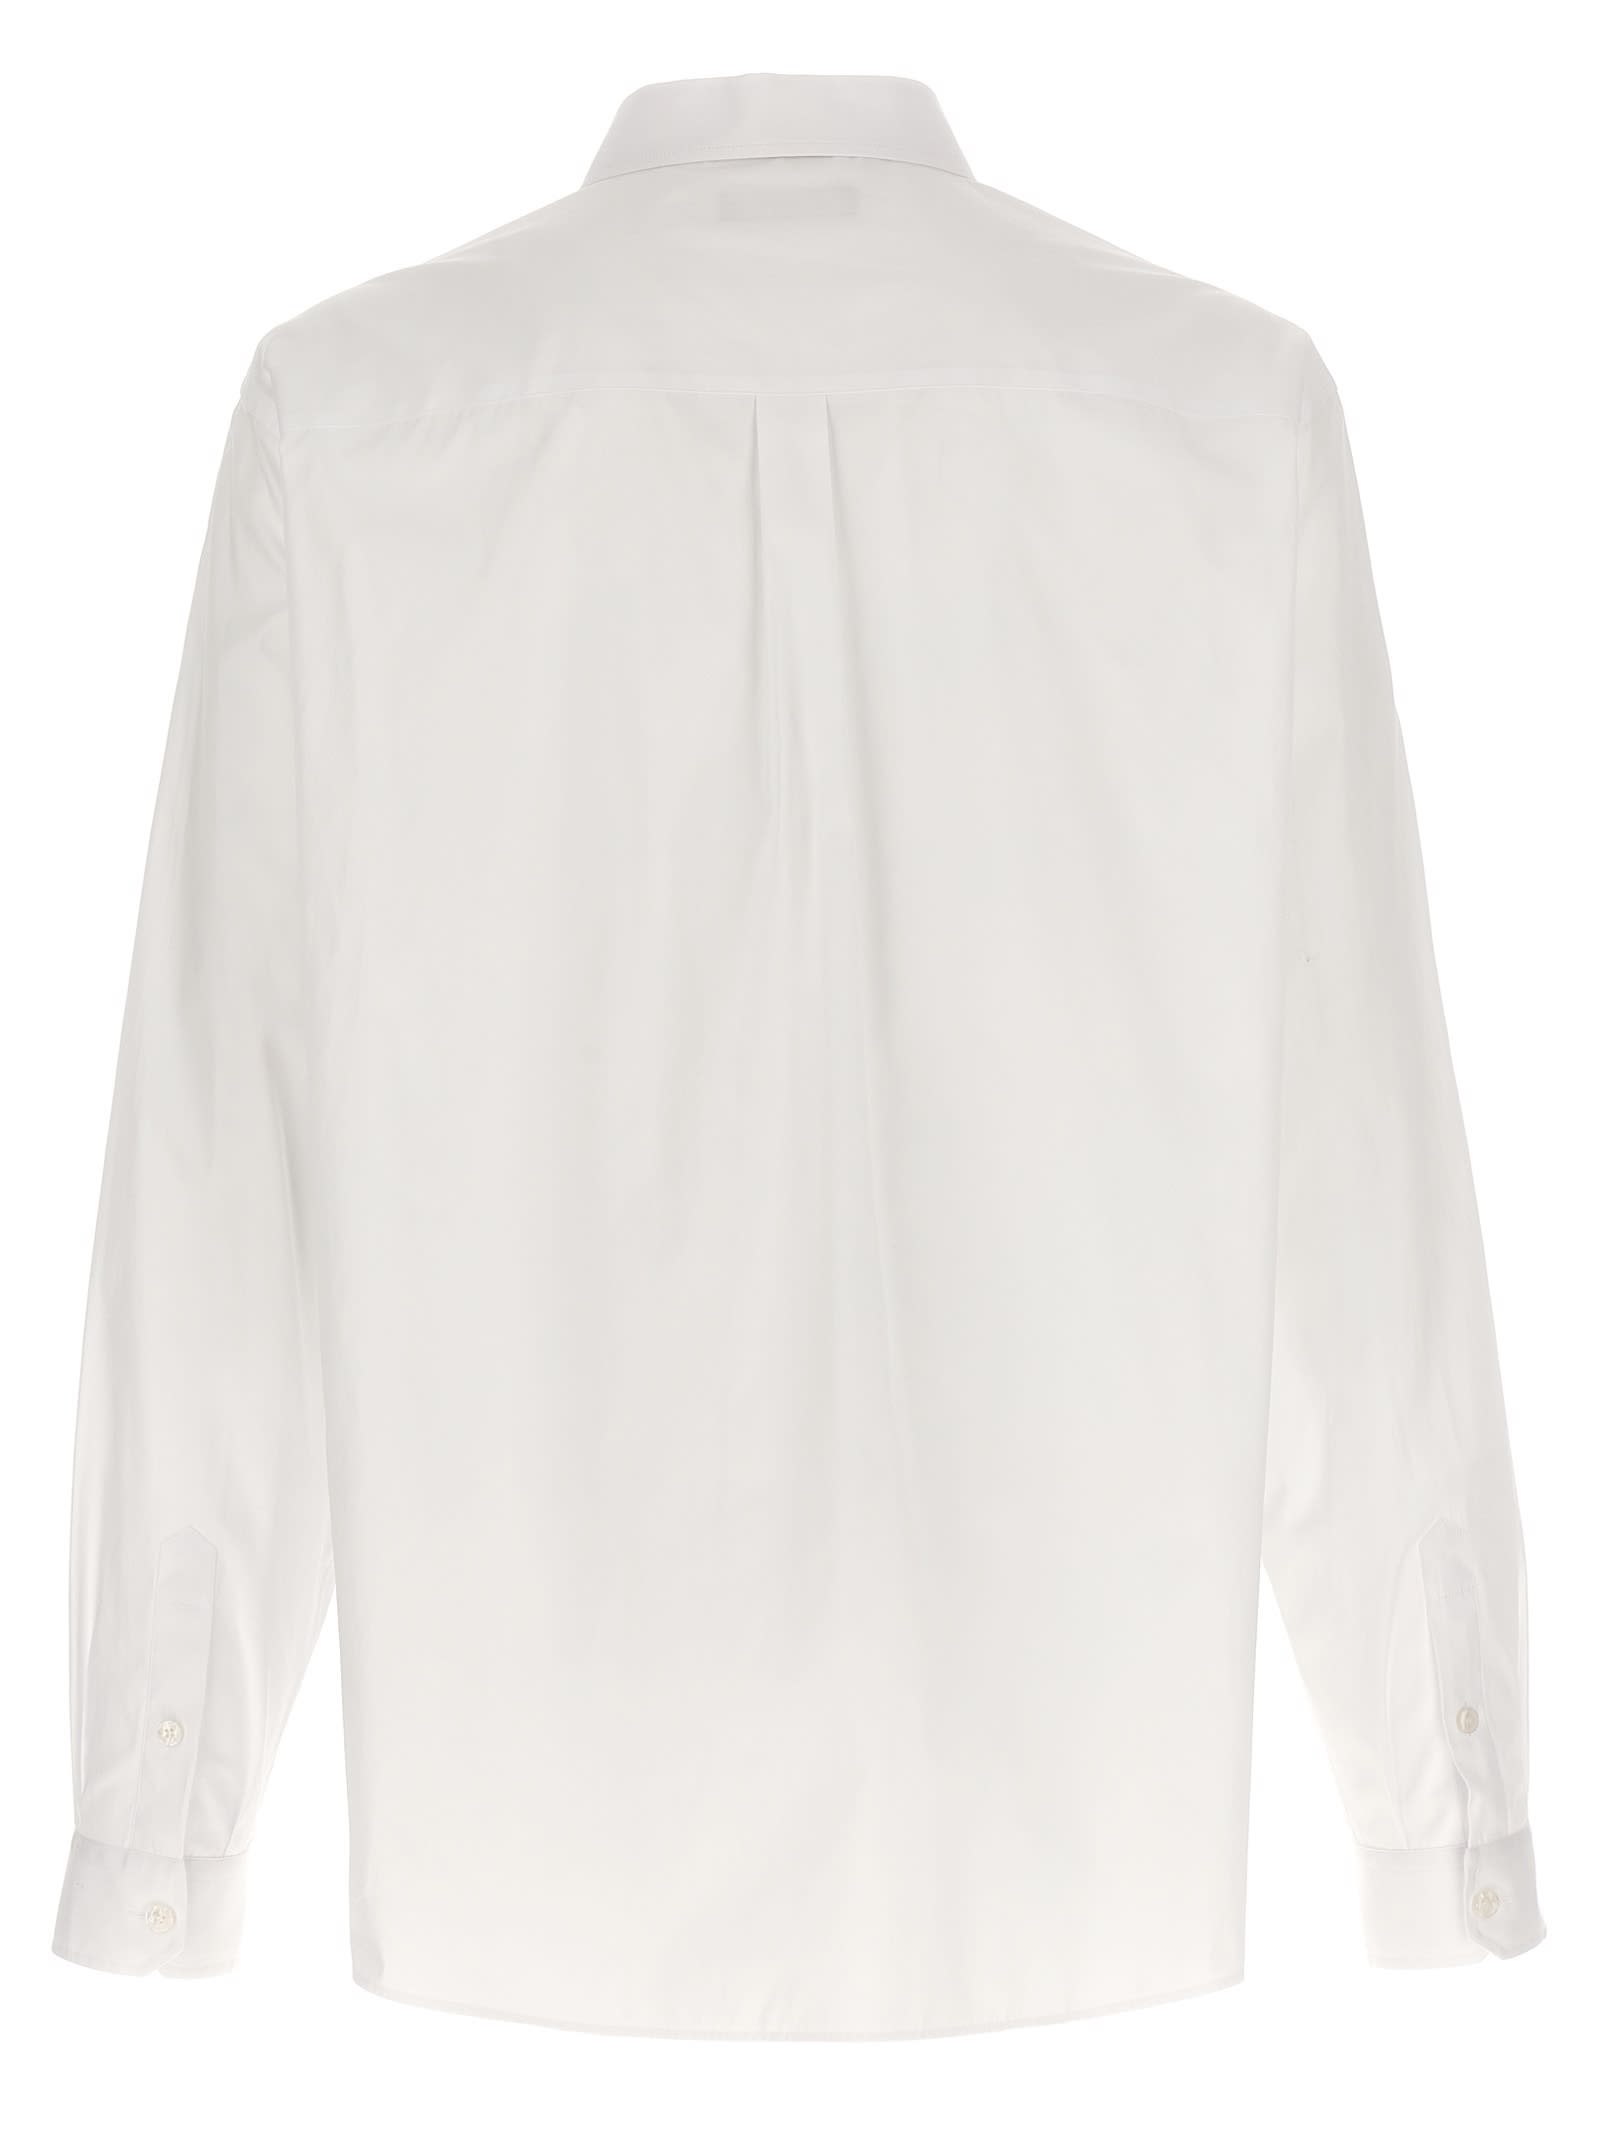 Shop Dolce & Gabbana Martini Shirt In White